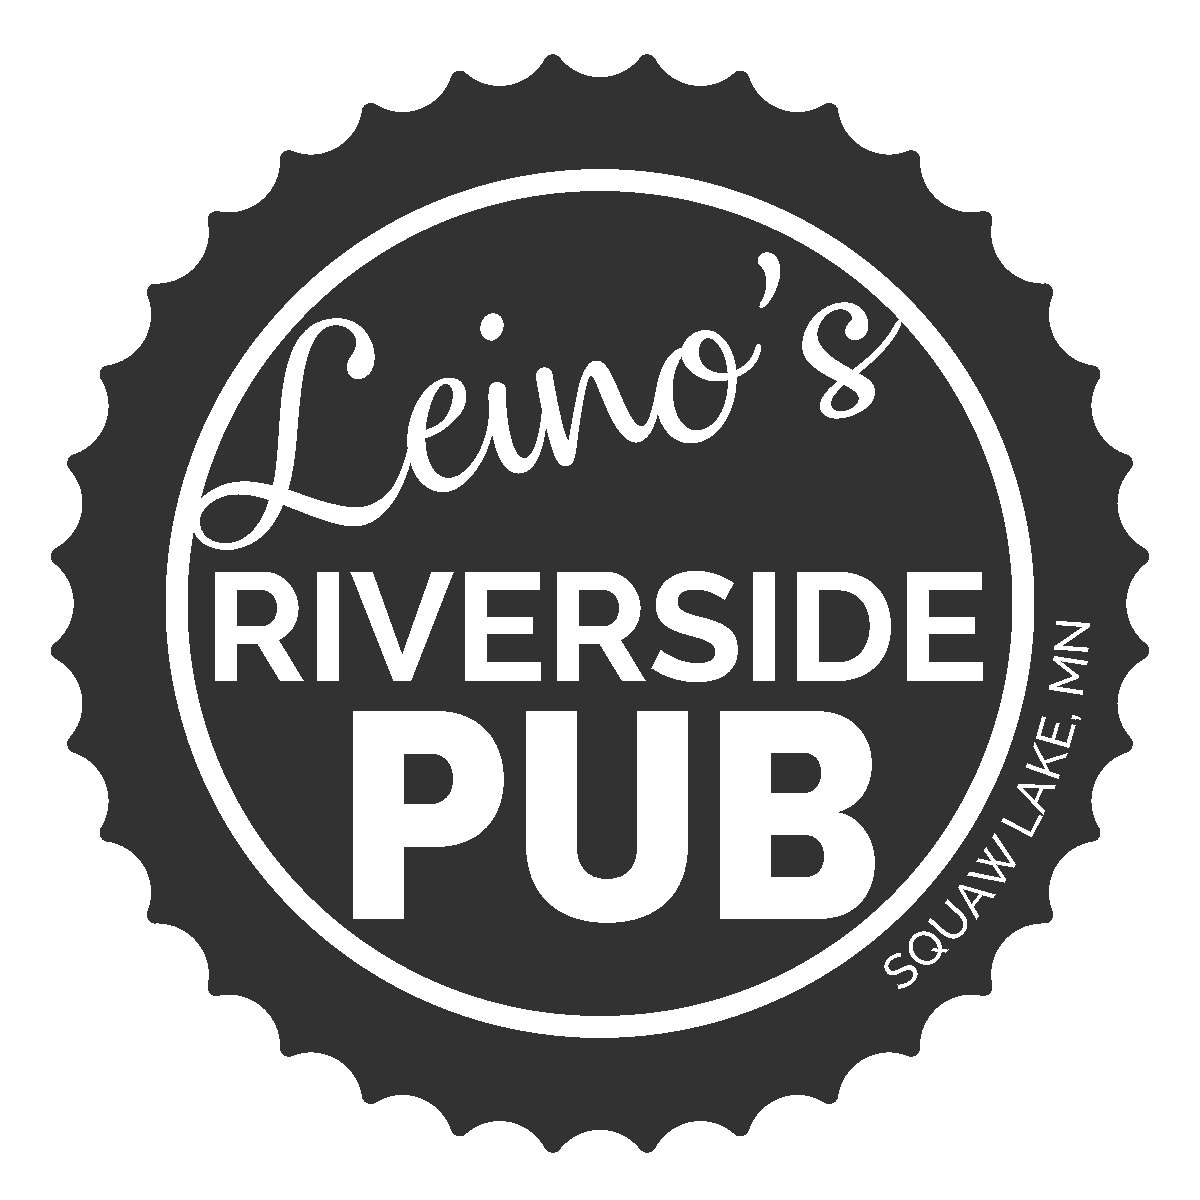 Leinos Riverside Pub